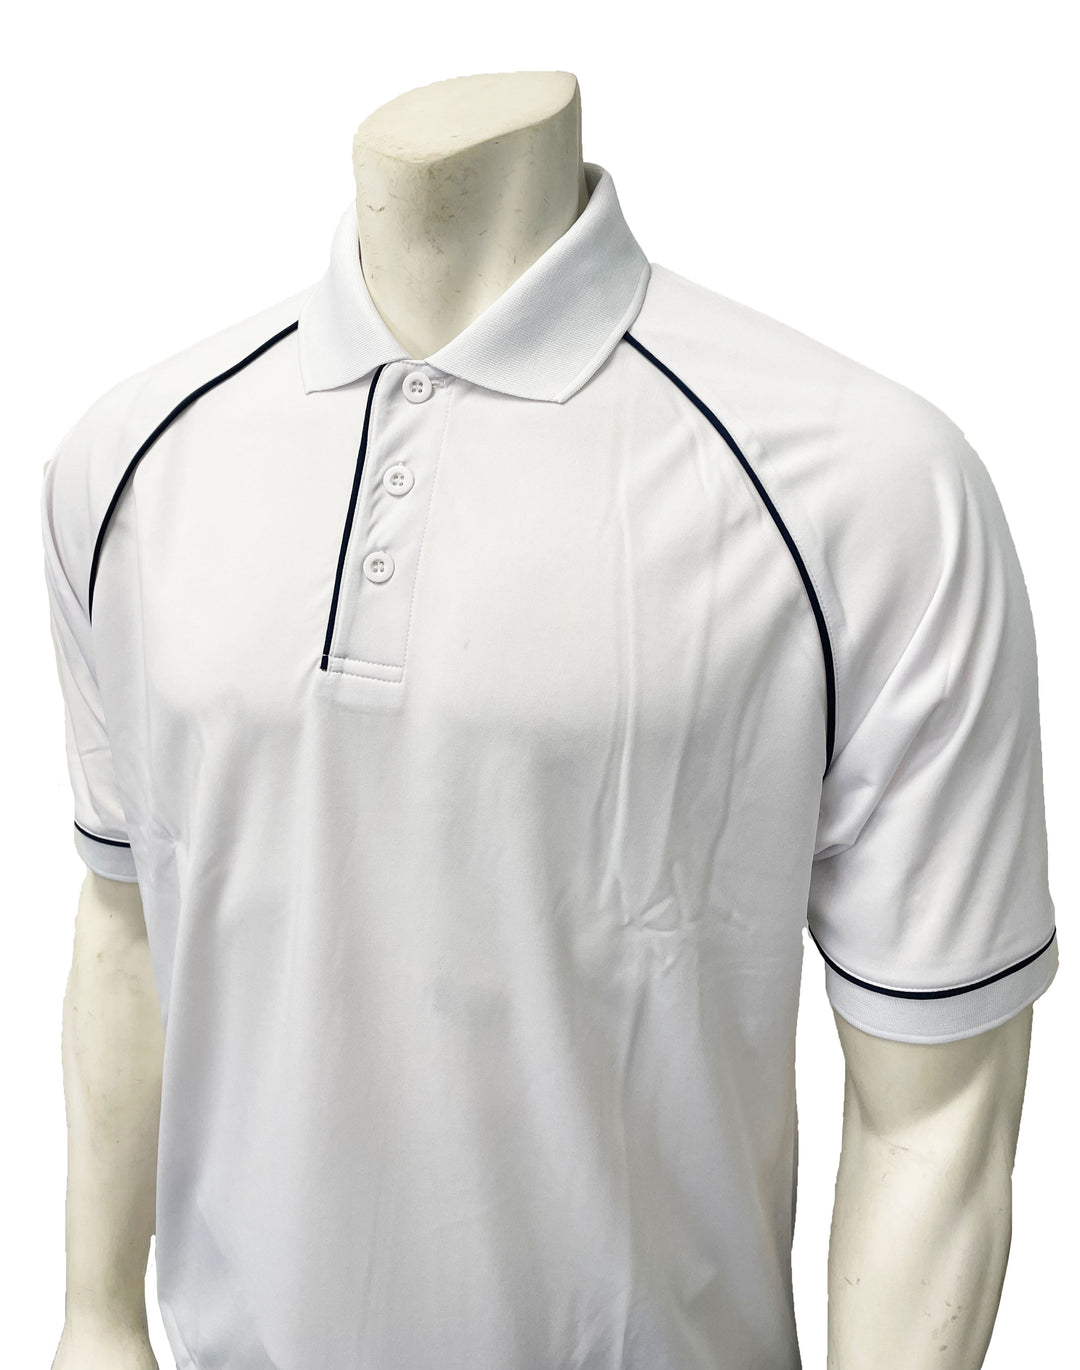 VBS400 WHT - White Mesh Shirt No Pocket